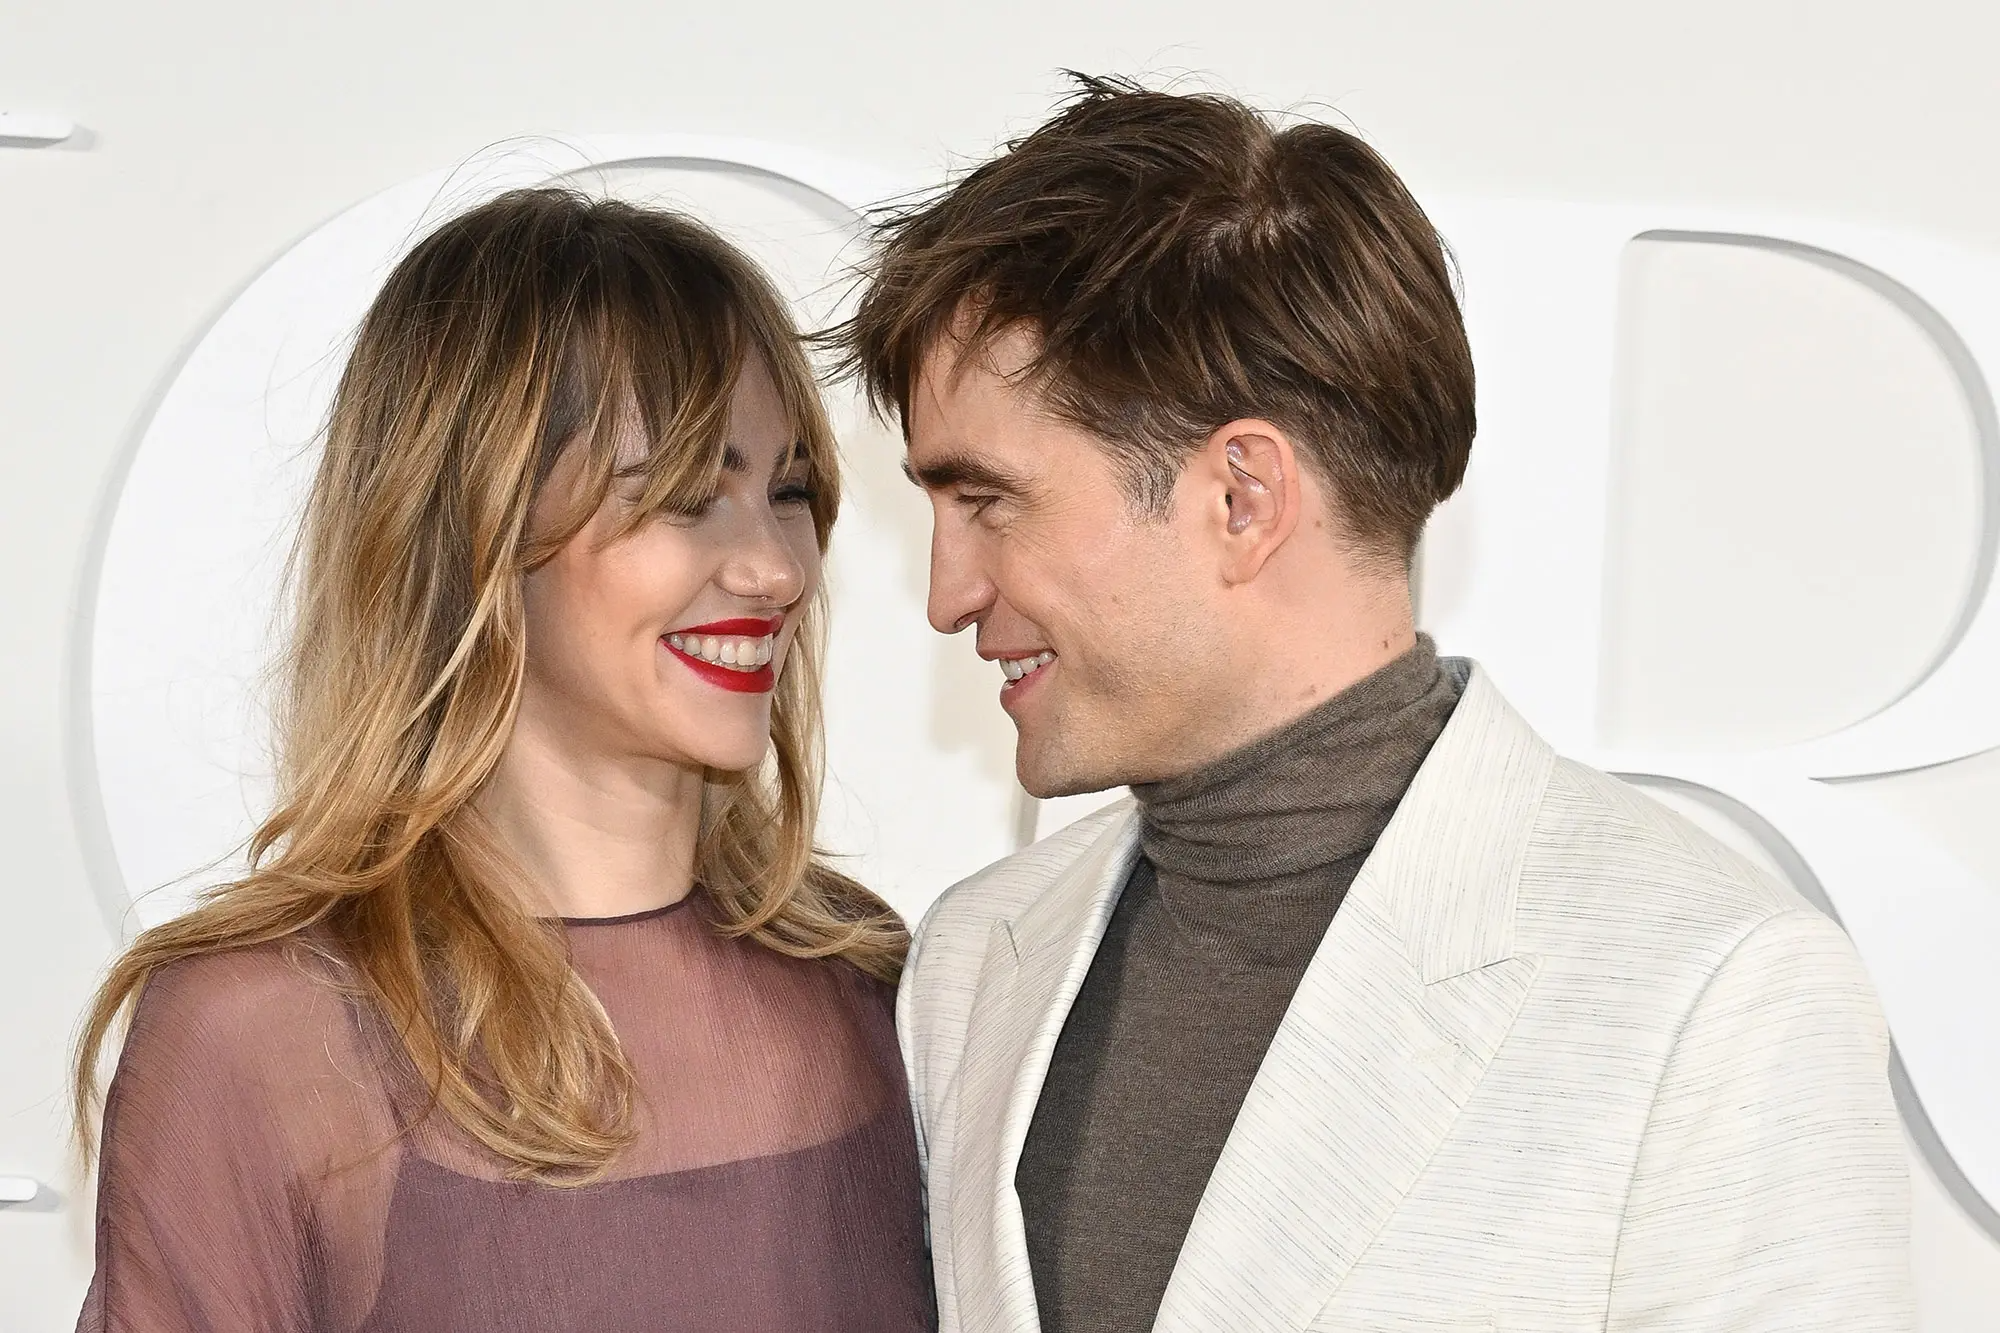 Ma cà rồng Robert Pattinson và bạn gái người mẫu lần đầu công khai lộ diện sau 4 năm yêu, visual cả đôi gây xôn xao - Ảnh 2.